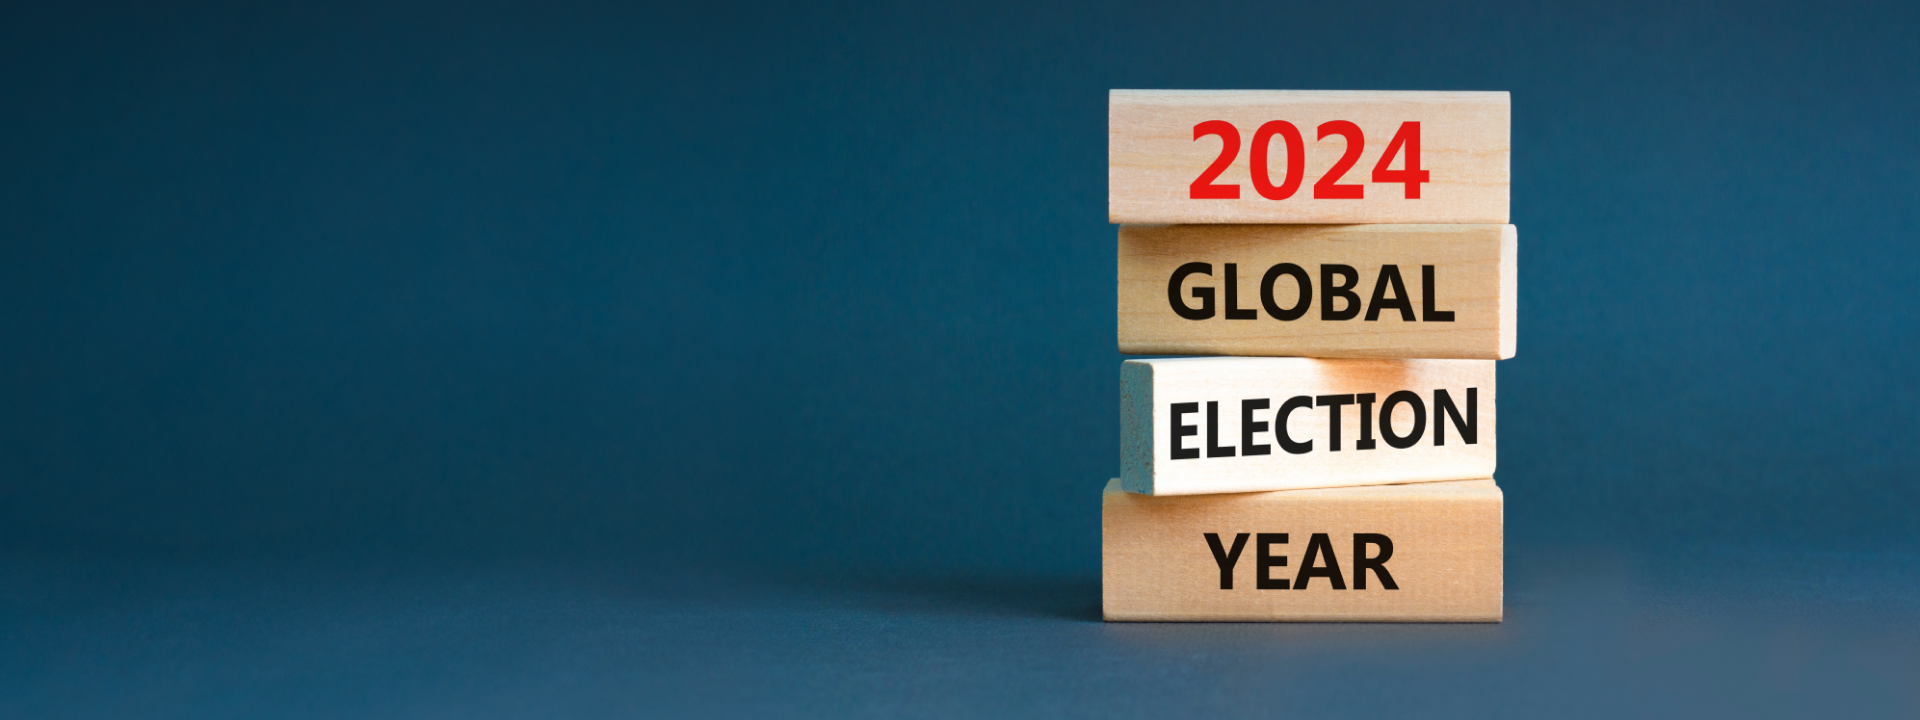 글로벌 선거의 해: 주요 이슈와 쟁점